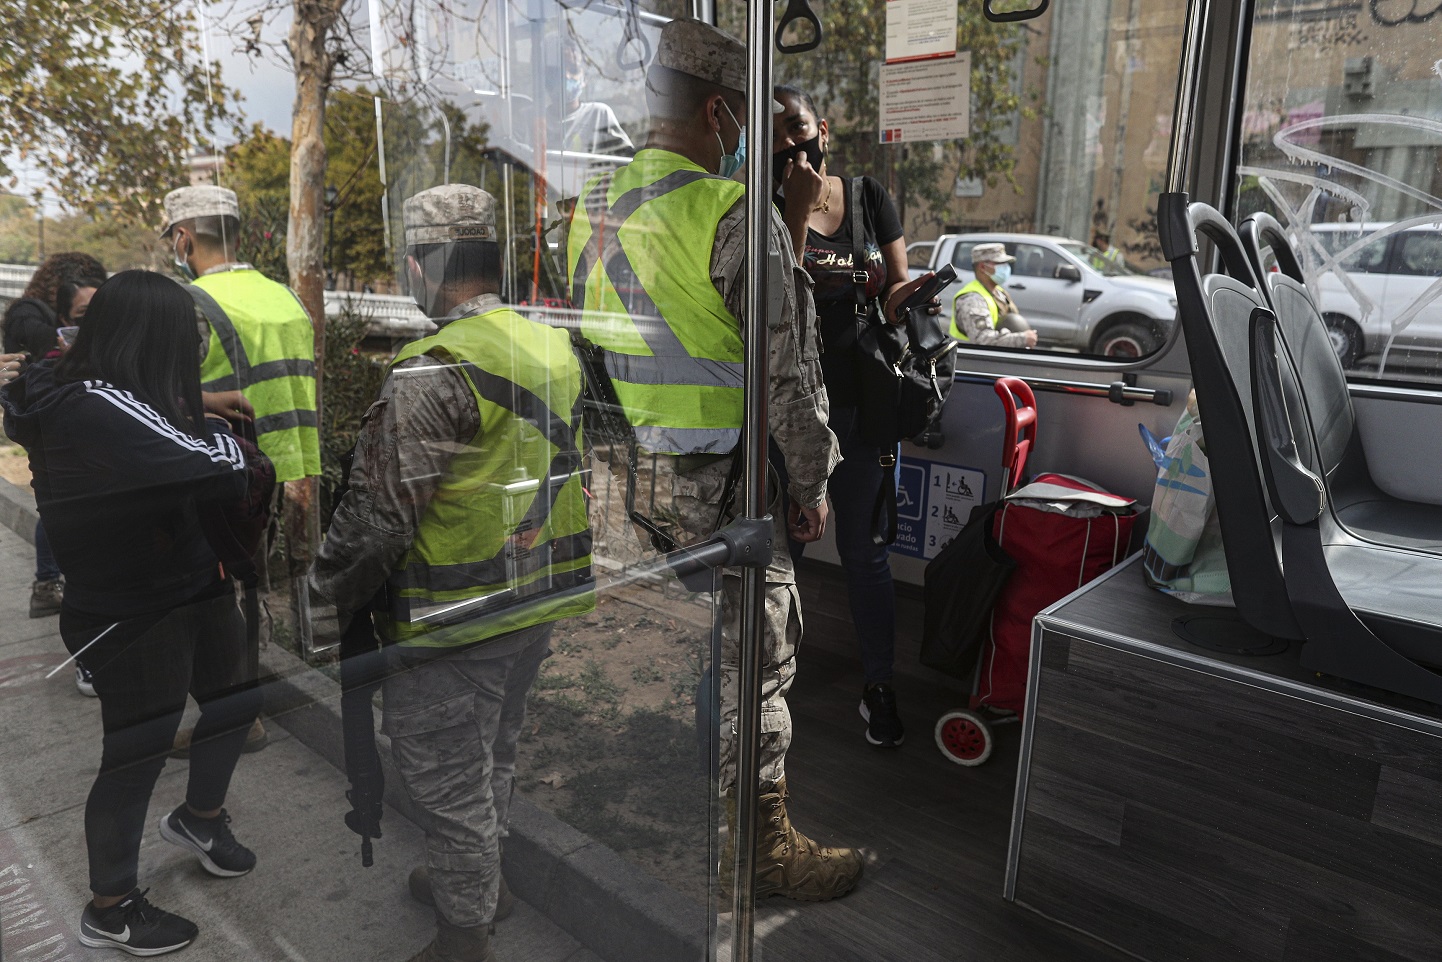 Soldados chequean los permisos de circulación de transeúntes en Santiago (AP Photo/Esteban Felix)